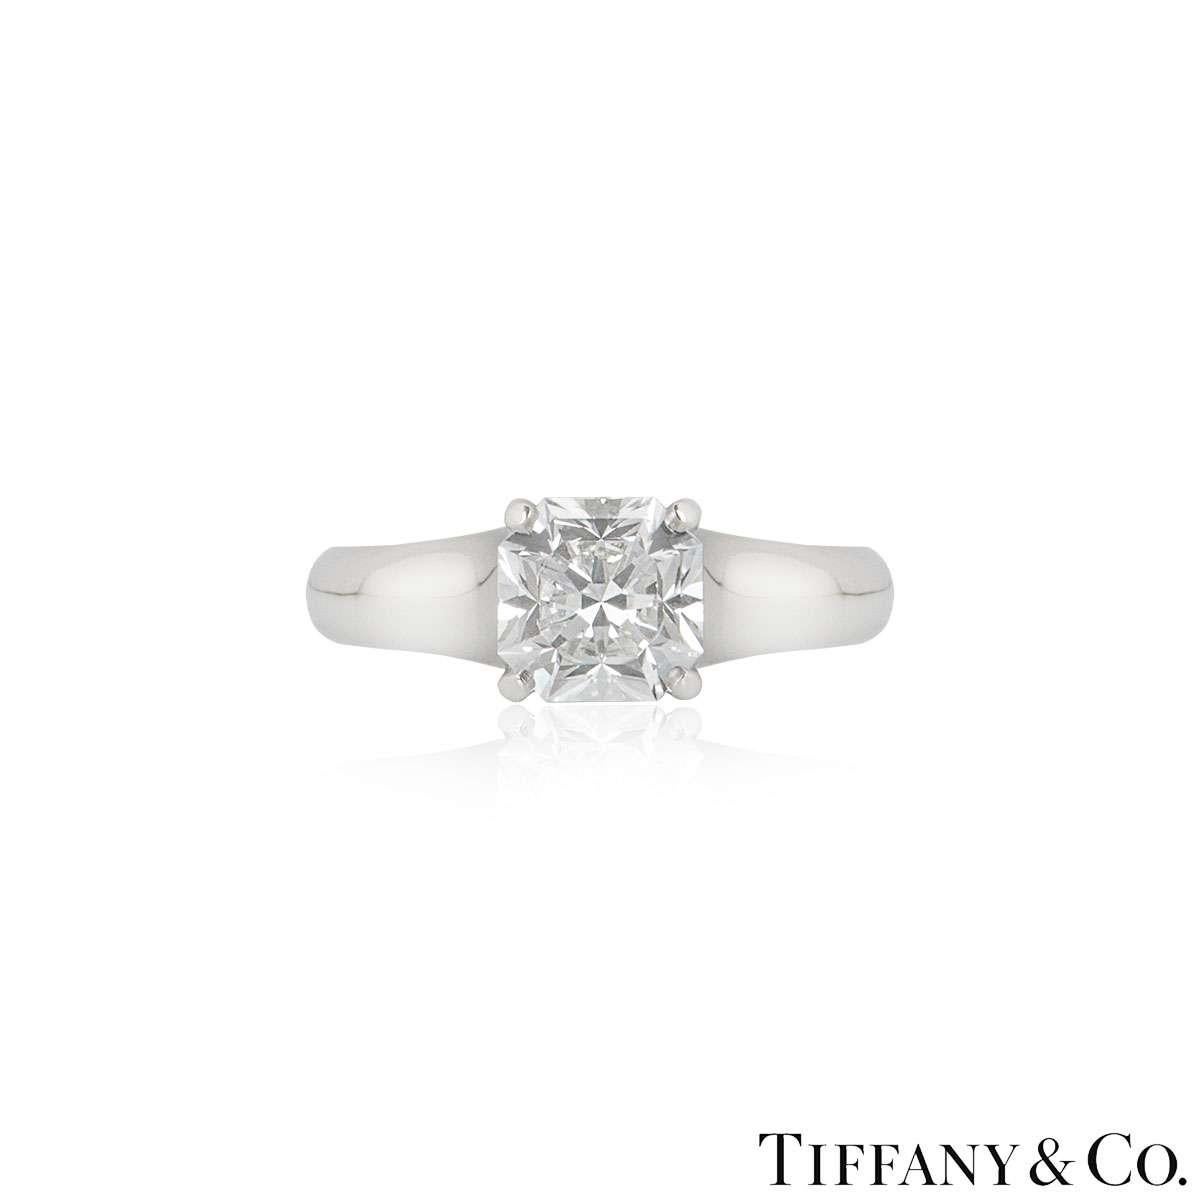 Une superbe bague en platine à diamants Tiffany & Co. de la collection Lucida. La bague comprend un diamant de taille Lucida dans une monture à 4 griffes, d'un poids de 1,27ct, de couleur E et de pureté VS1. La bague est de taille UK K / EU 50 / US